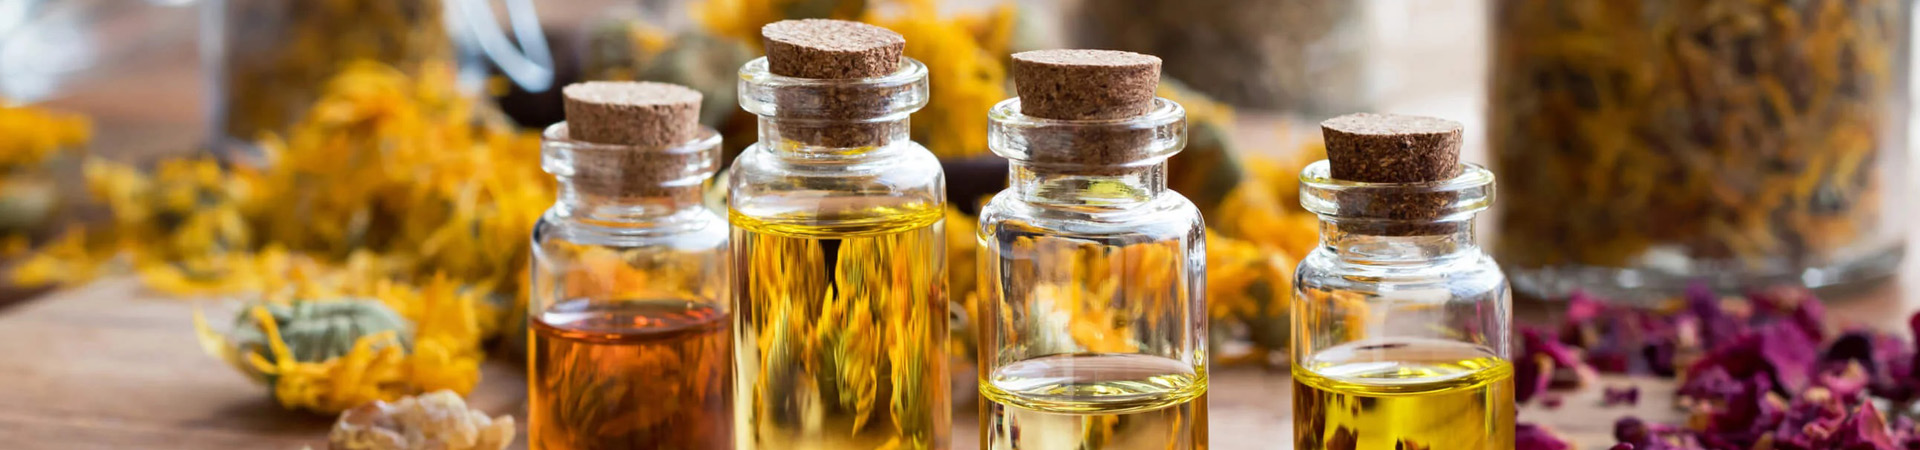 Contact Ajanta Aromas For Essential Oils and Natural Fragnances